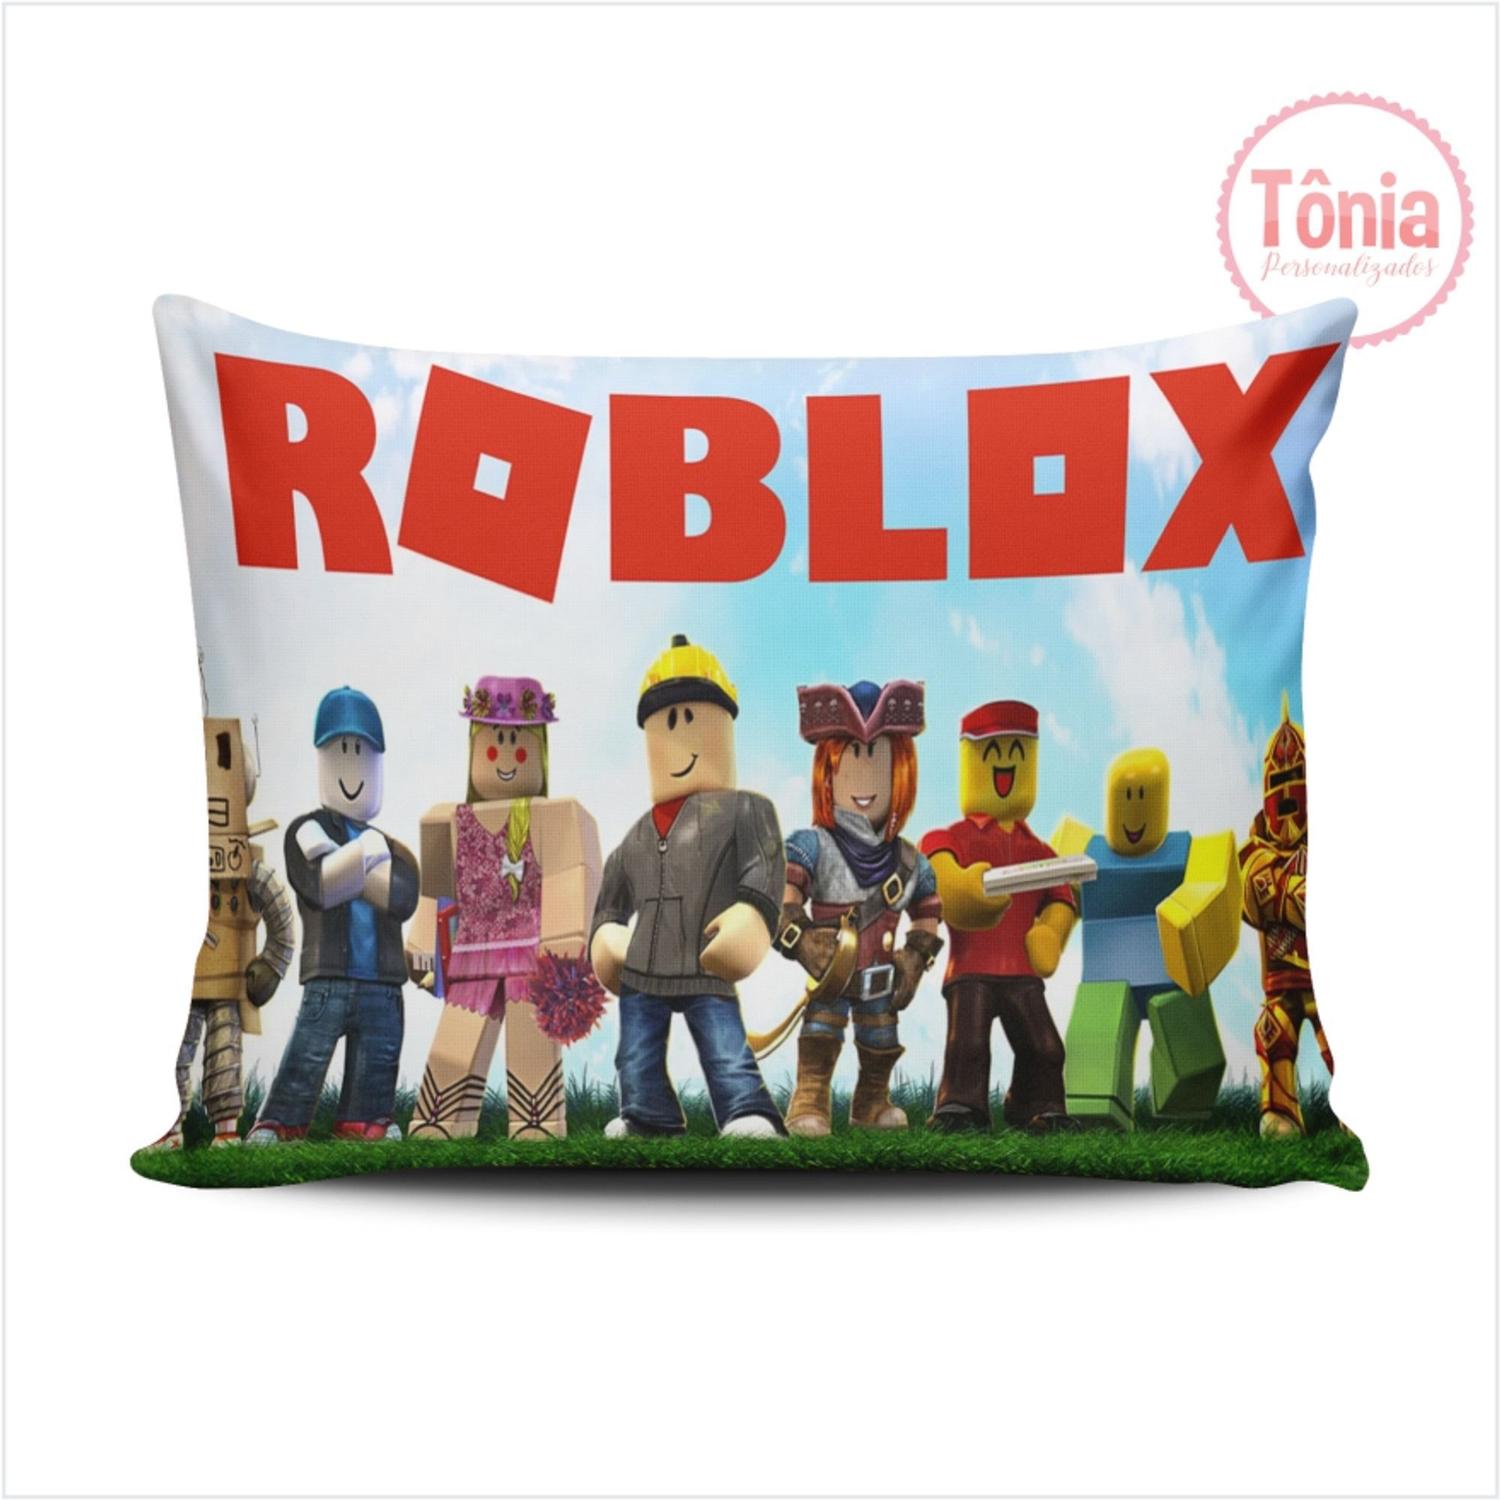 Roblox Jogo Almofada 30x20 Cm Tonia Personalizados Almofada Decorativa Magazine Luiza - jogos que nao sejam roblox